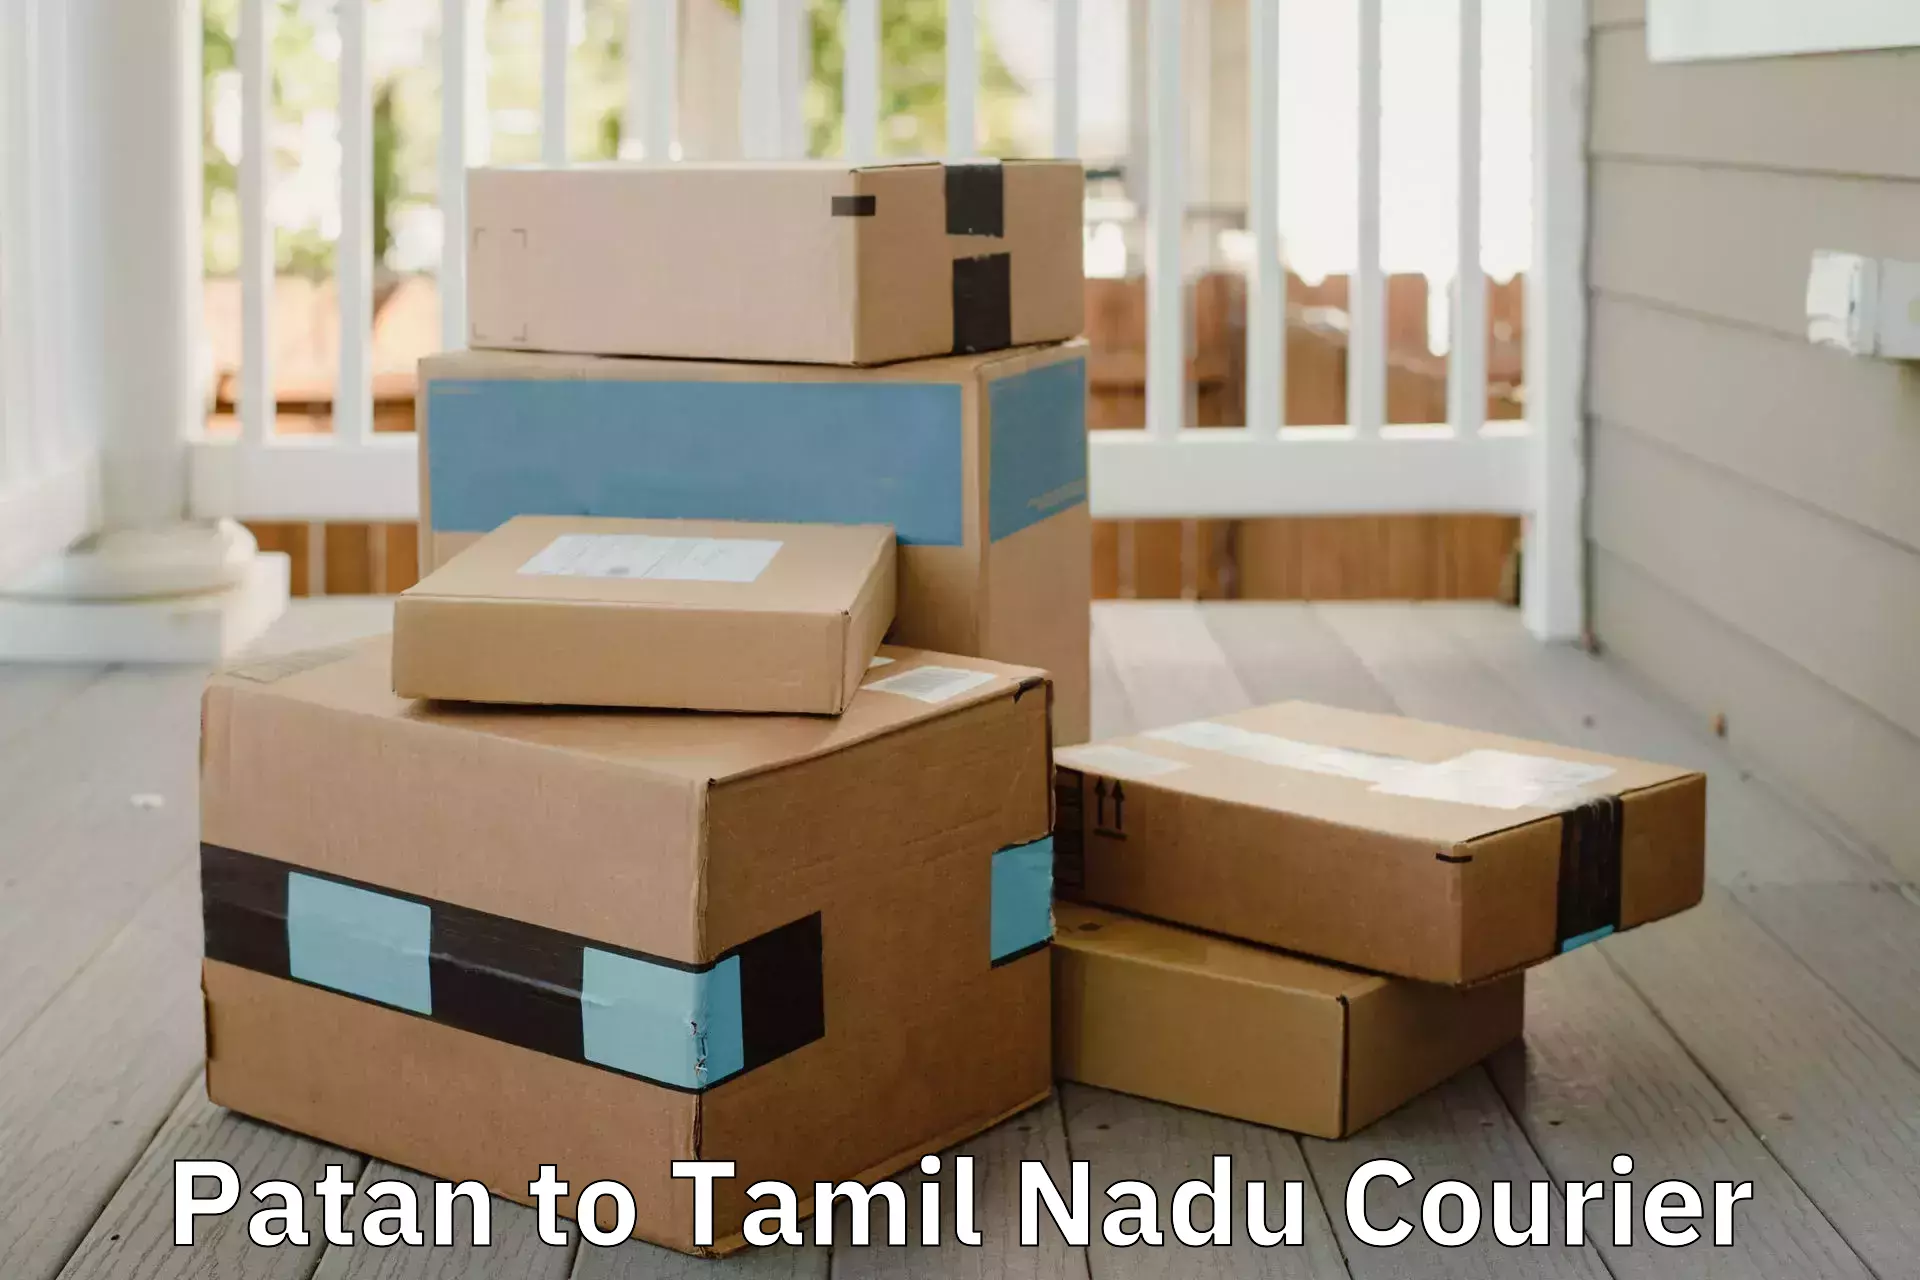 Trusted home movers Patan to Thiruvadanai